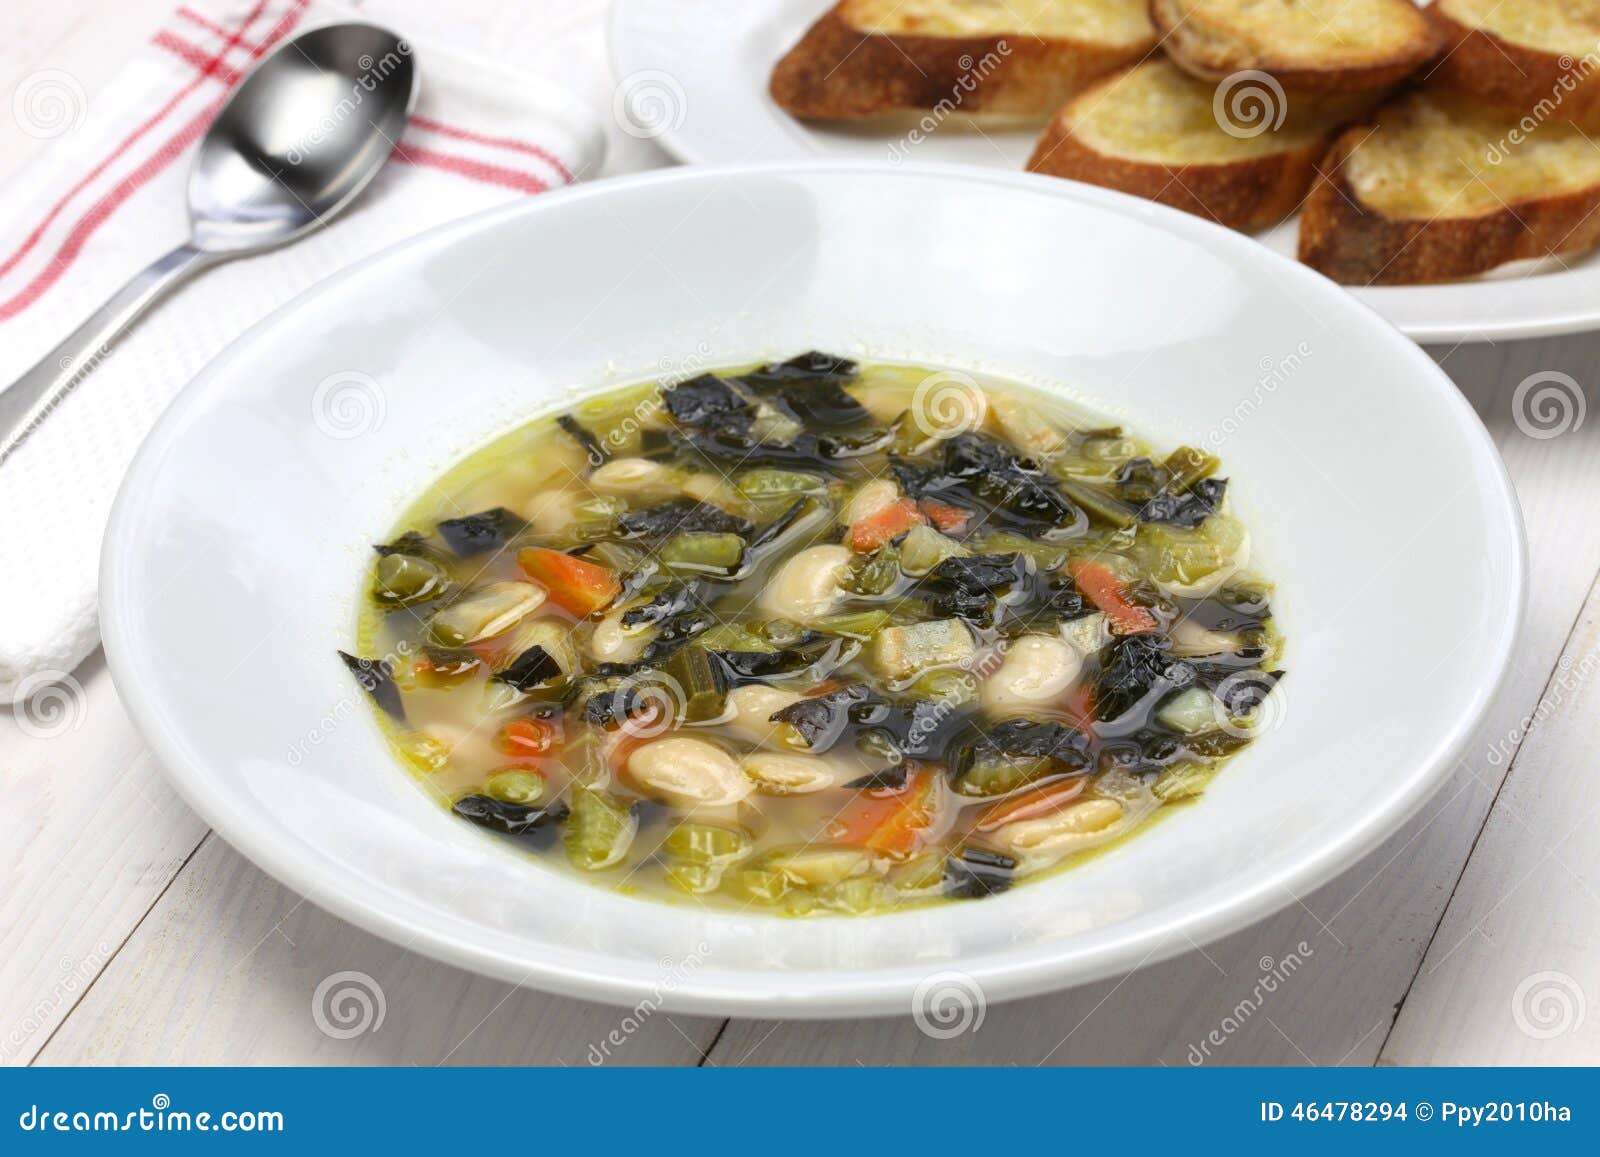 zuppa di cavolo nero, black kale soup